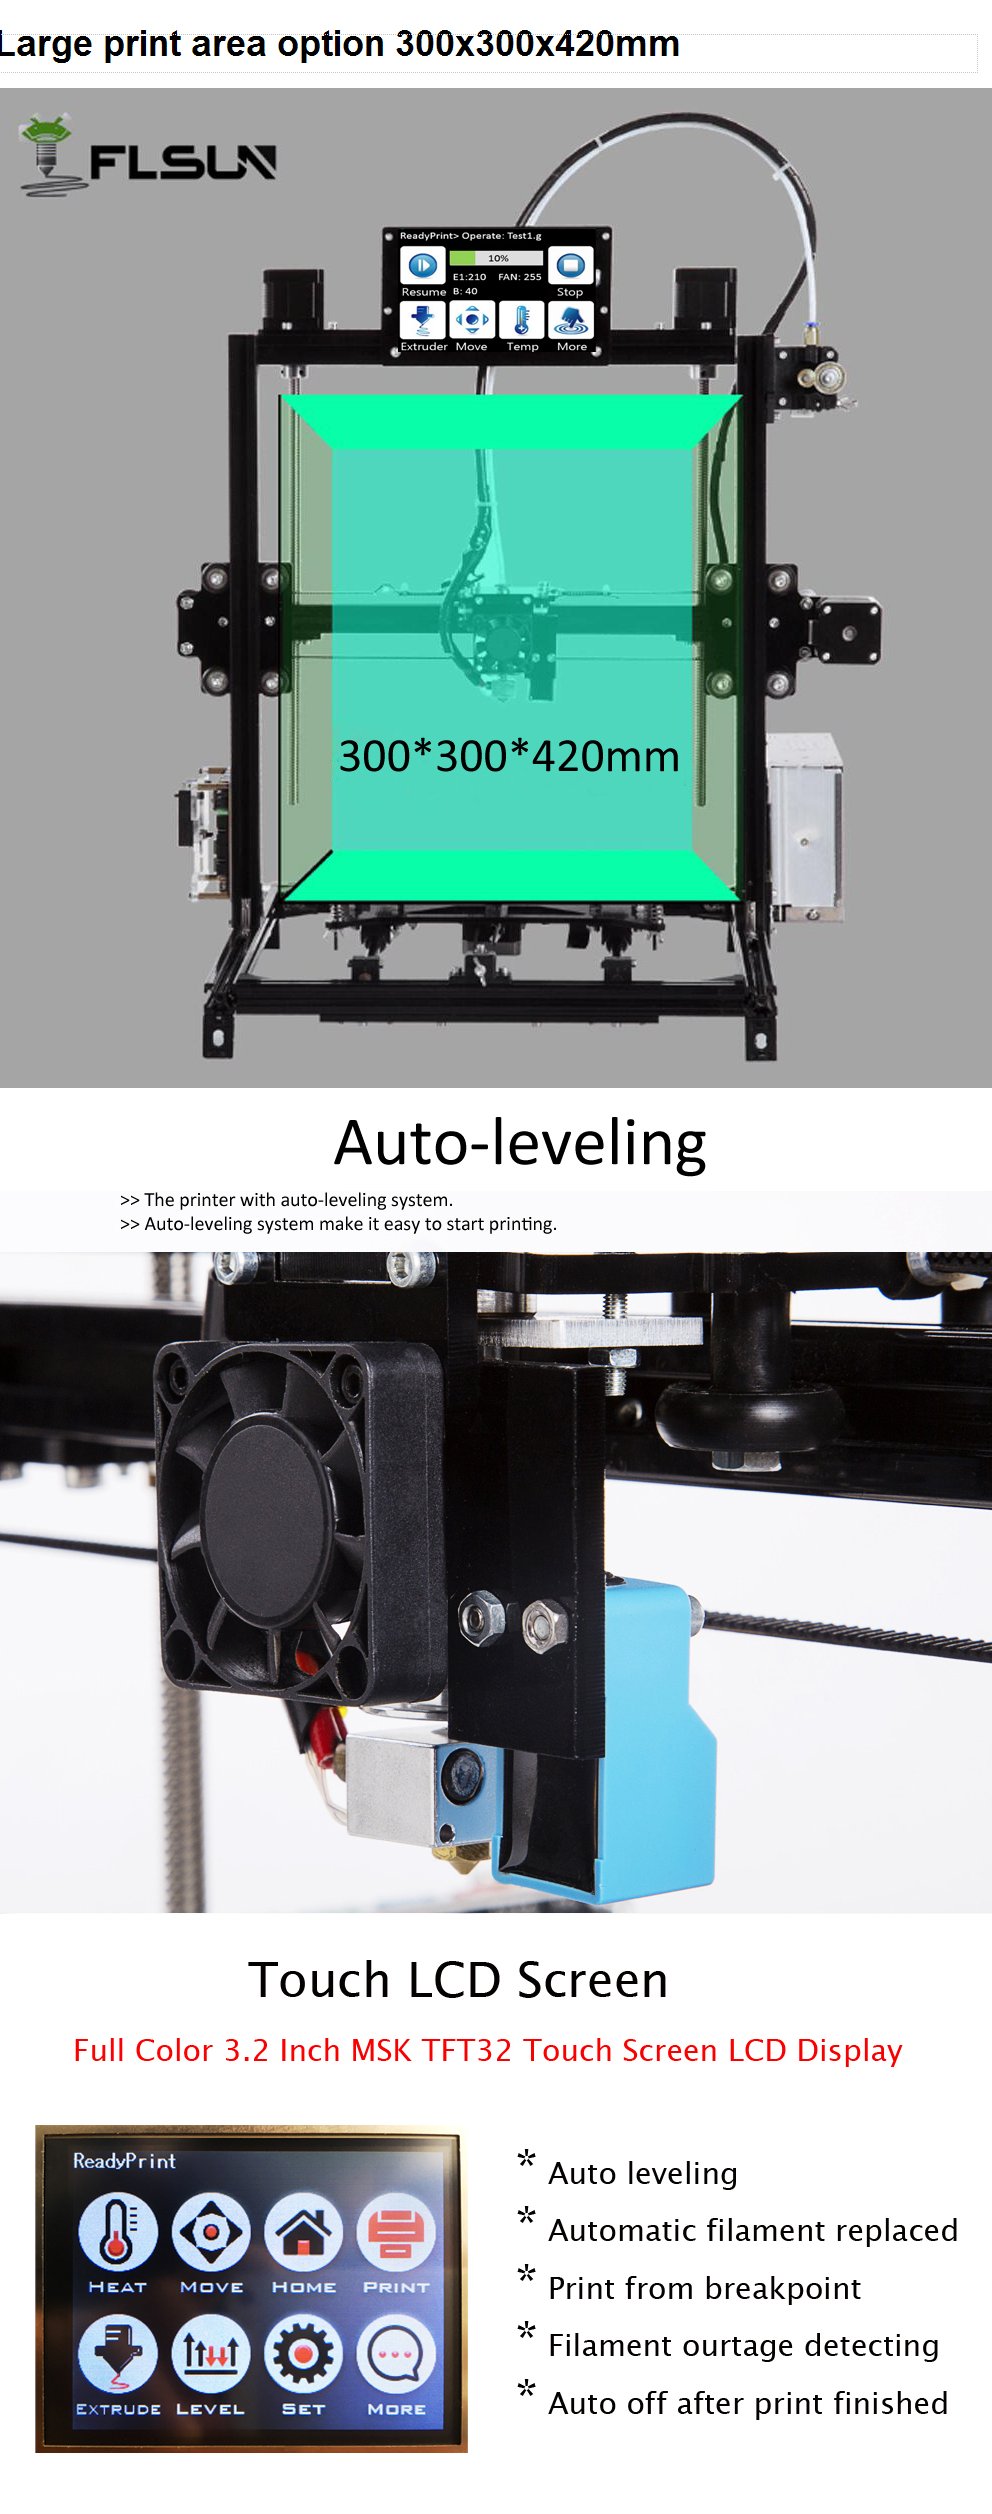 FLSUN® C Plus Desktop DIY 3D Printer With Touch Screen Dual Nozzle Auto Leveling Double Z-motors Support Flexible Filament 300*300*420mm Printing Size 12